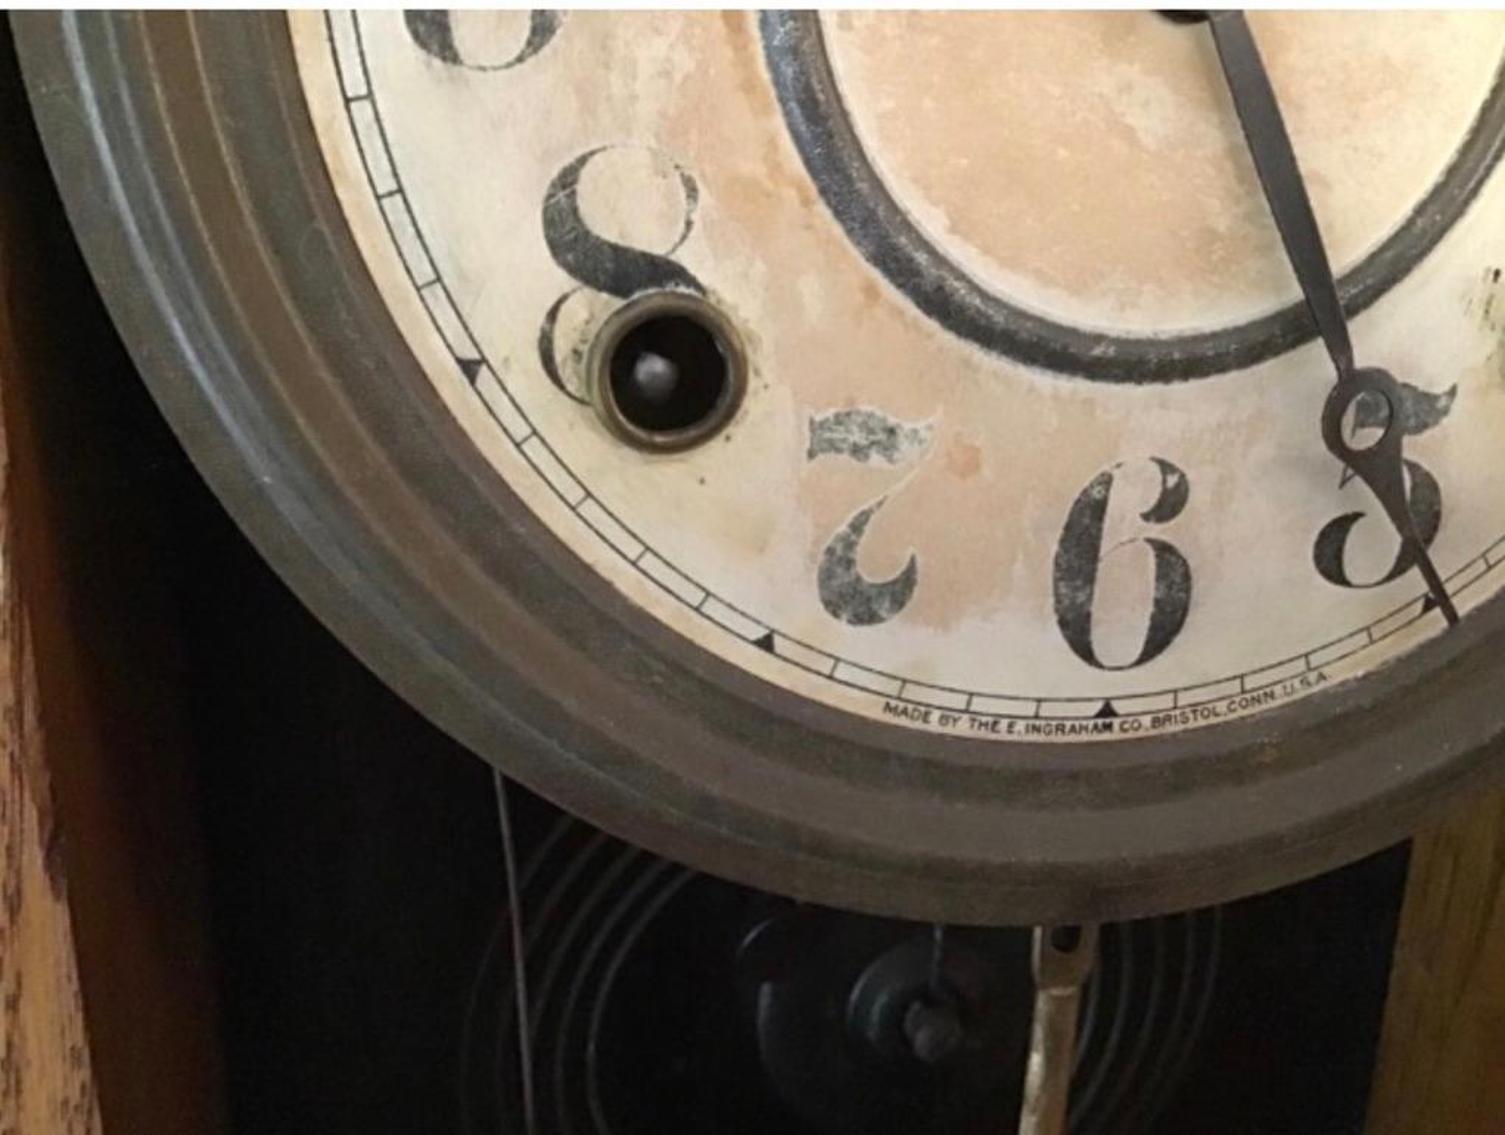 Image for Ingram Oak Case Kitchen Clock